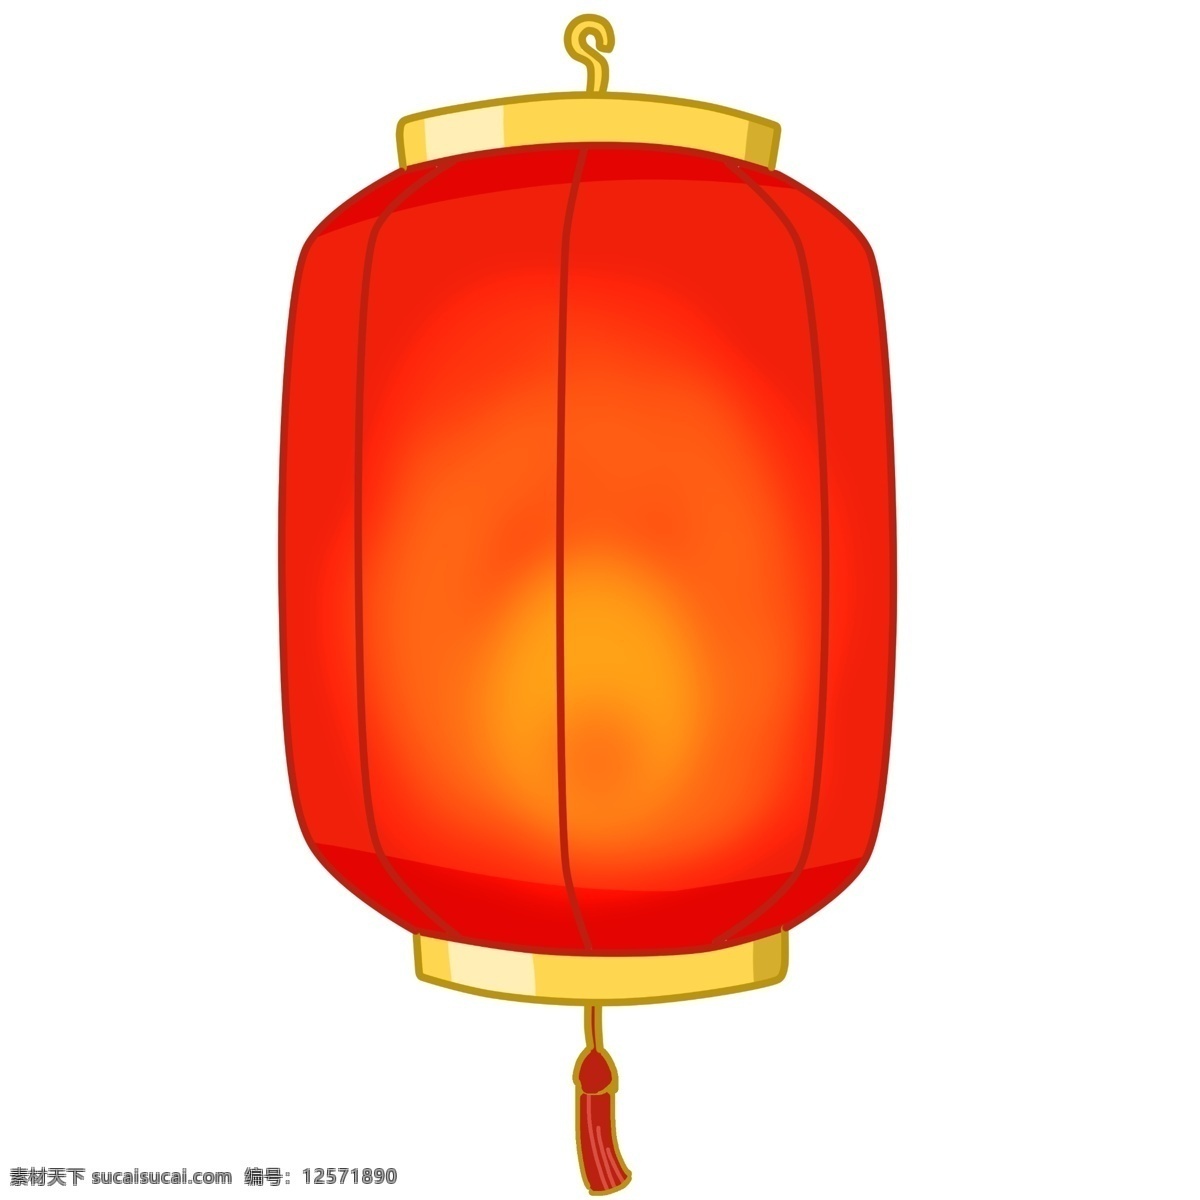 新年 复古 灯笼 手绘 插画 新年灯笼 复古灯笼 漂亮的灯笼 红色的灯笼 手绘灯笼 卡通灯笼 灯笼挂饰